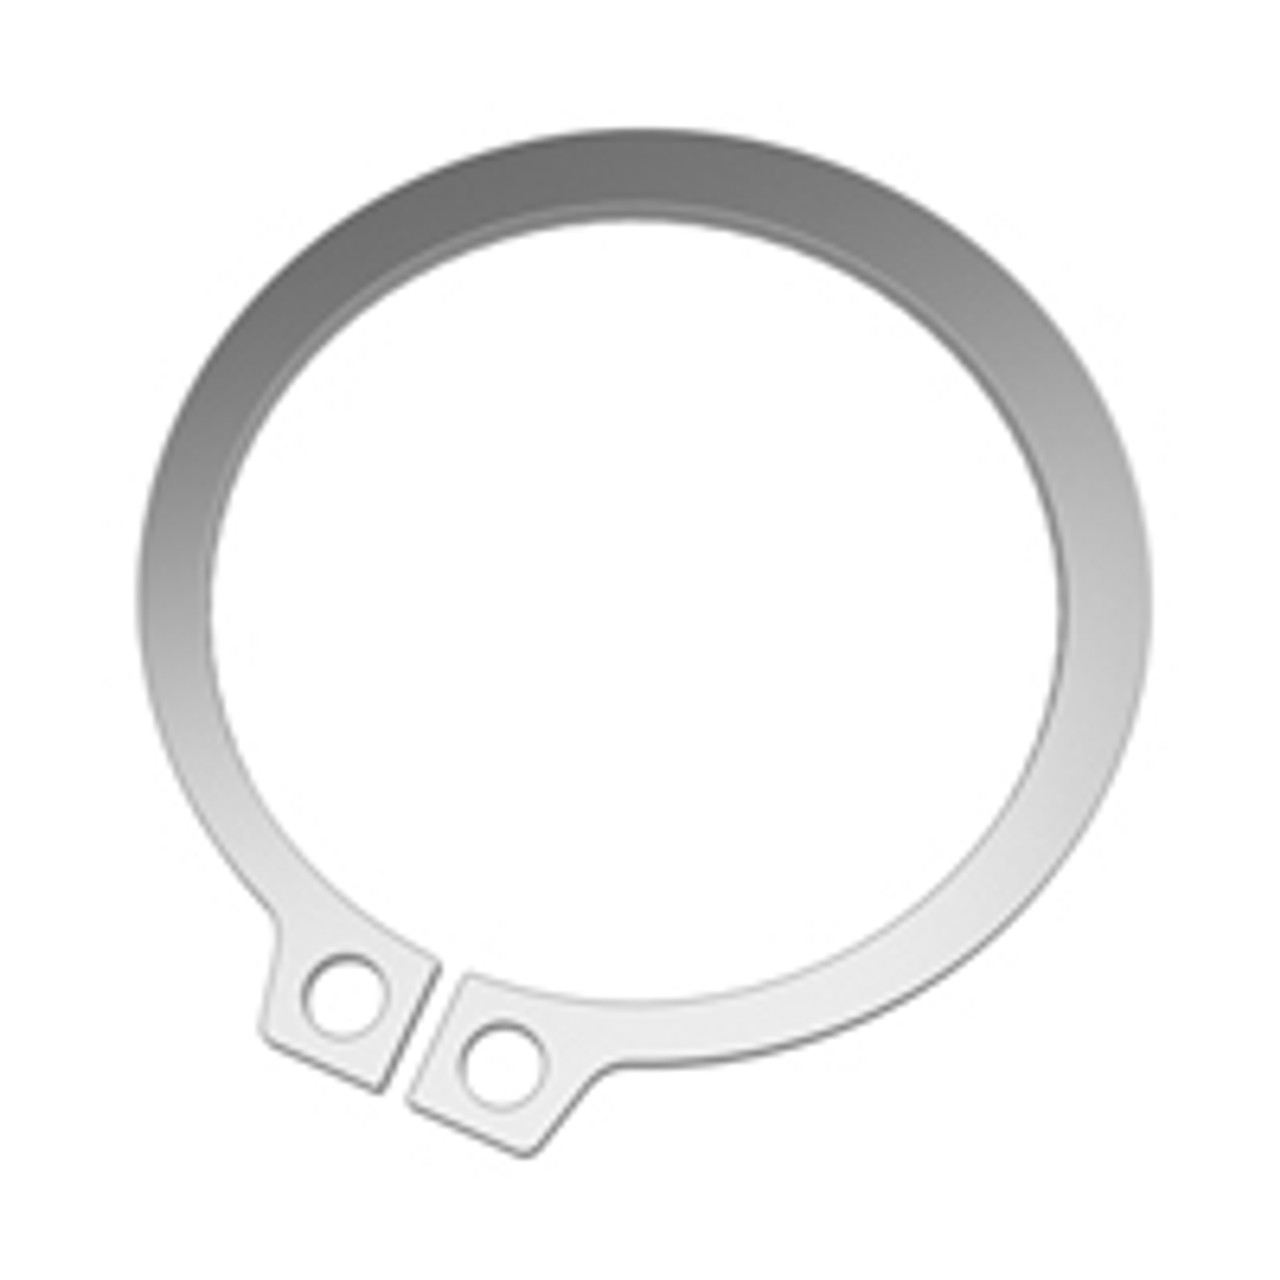 External SAE Stainless Standard Retaining Ring  SH-0087-H